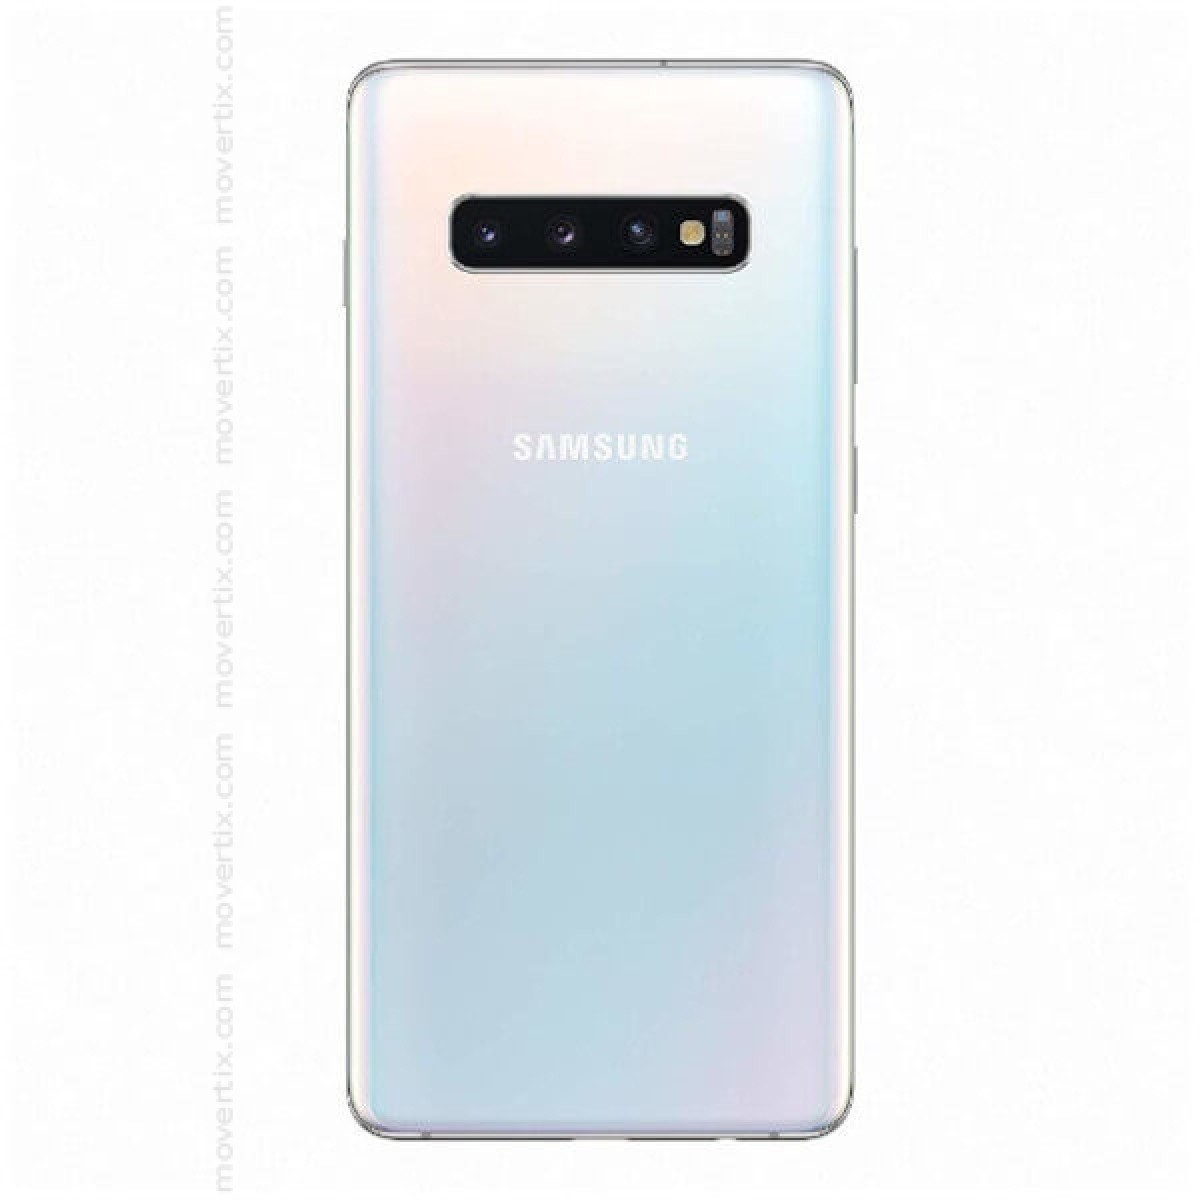 Samsung Galaxy S10 Plus Dual Sim Prism White 128gb And 8gb Ram